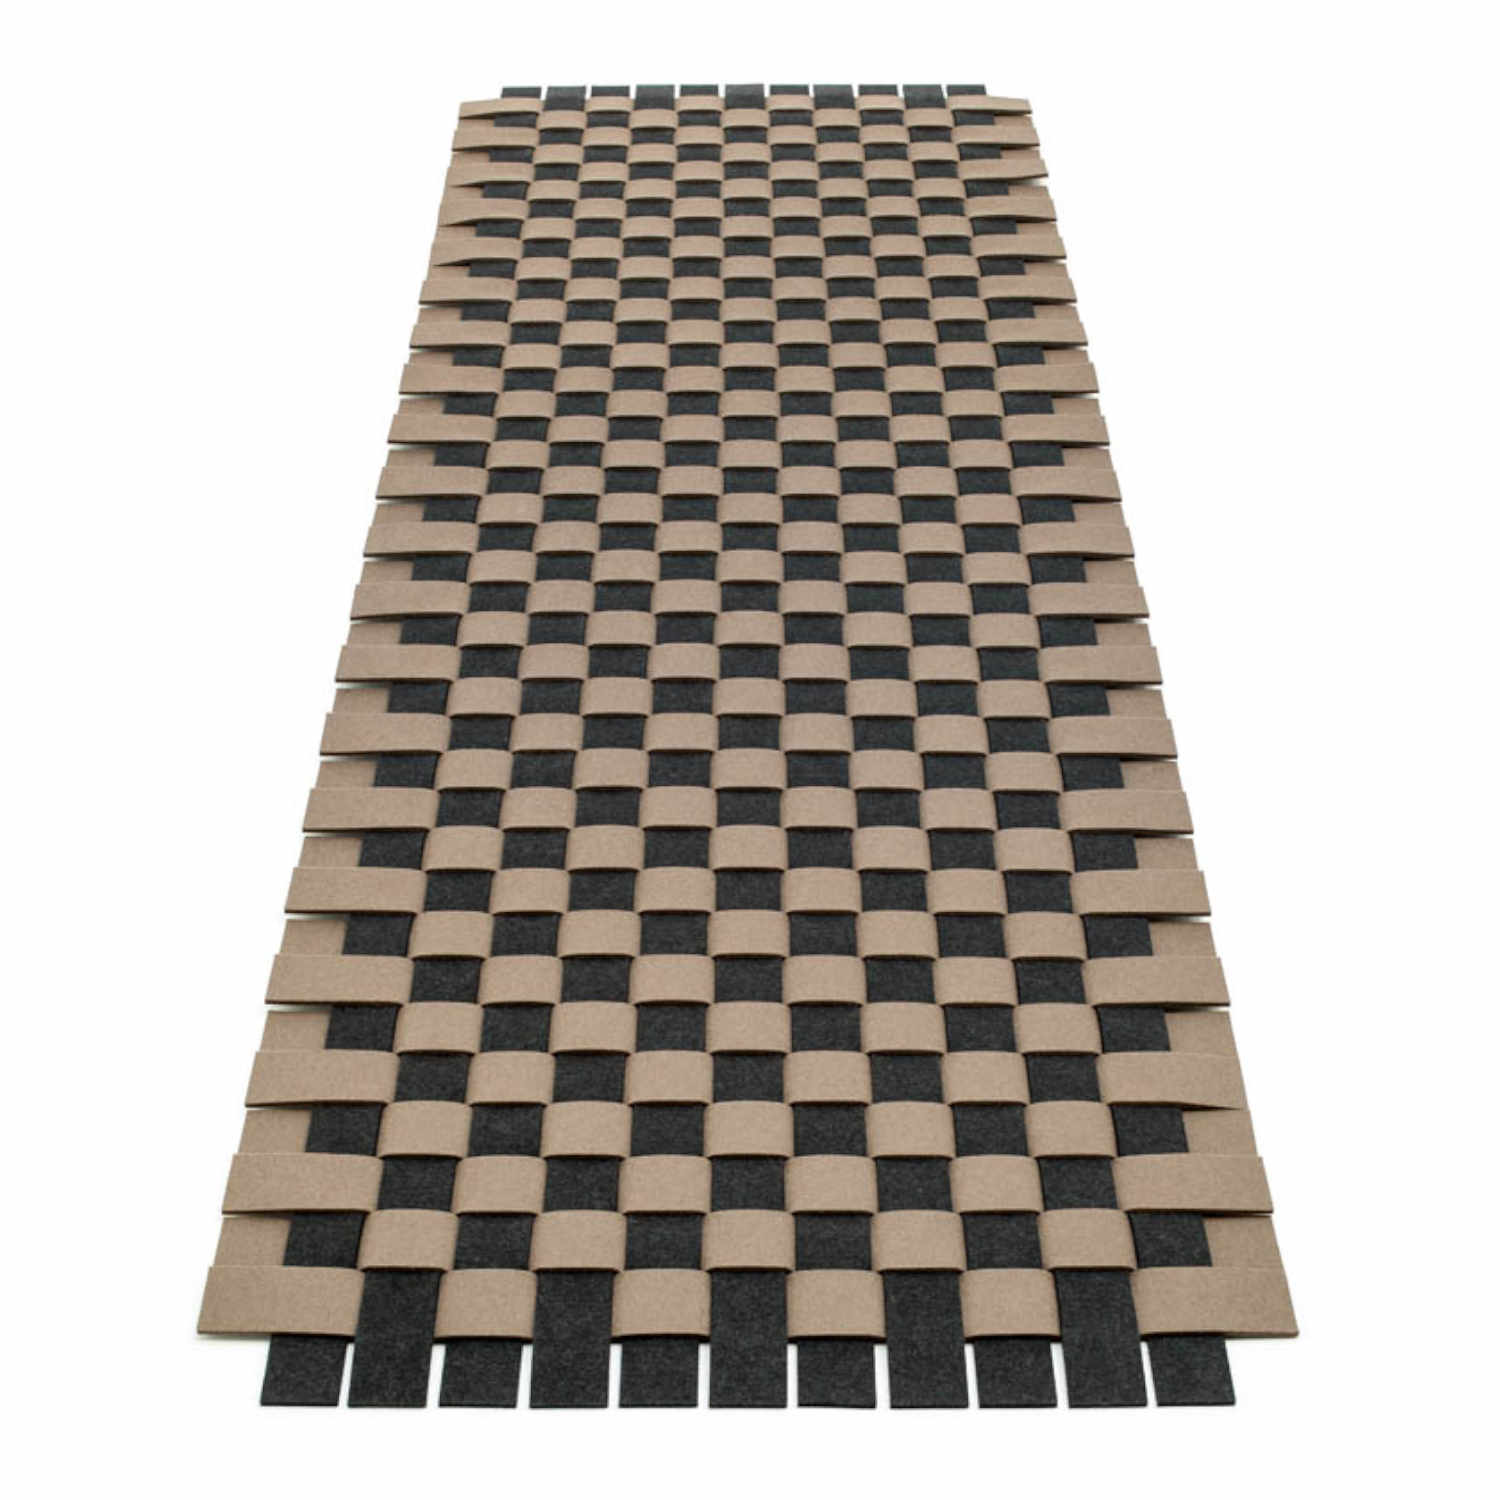 Teppichgeflecht 5 Teppich, Farbe marmor, Farbe 2 taubengrau 17, Grösse 145 × 205 cm von HEY-SIGN